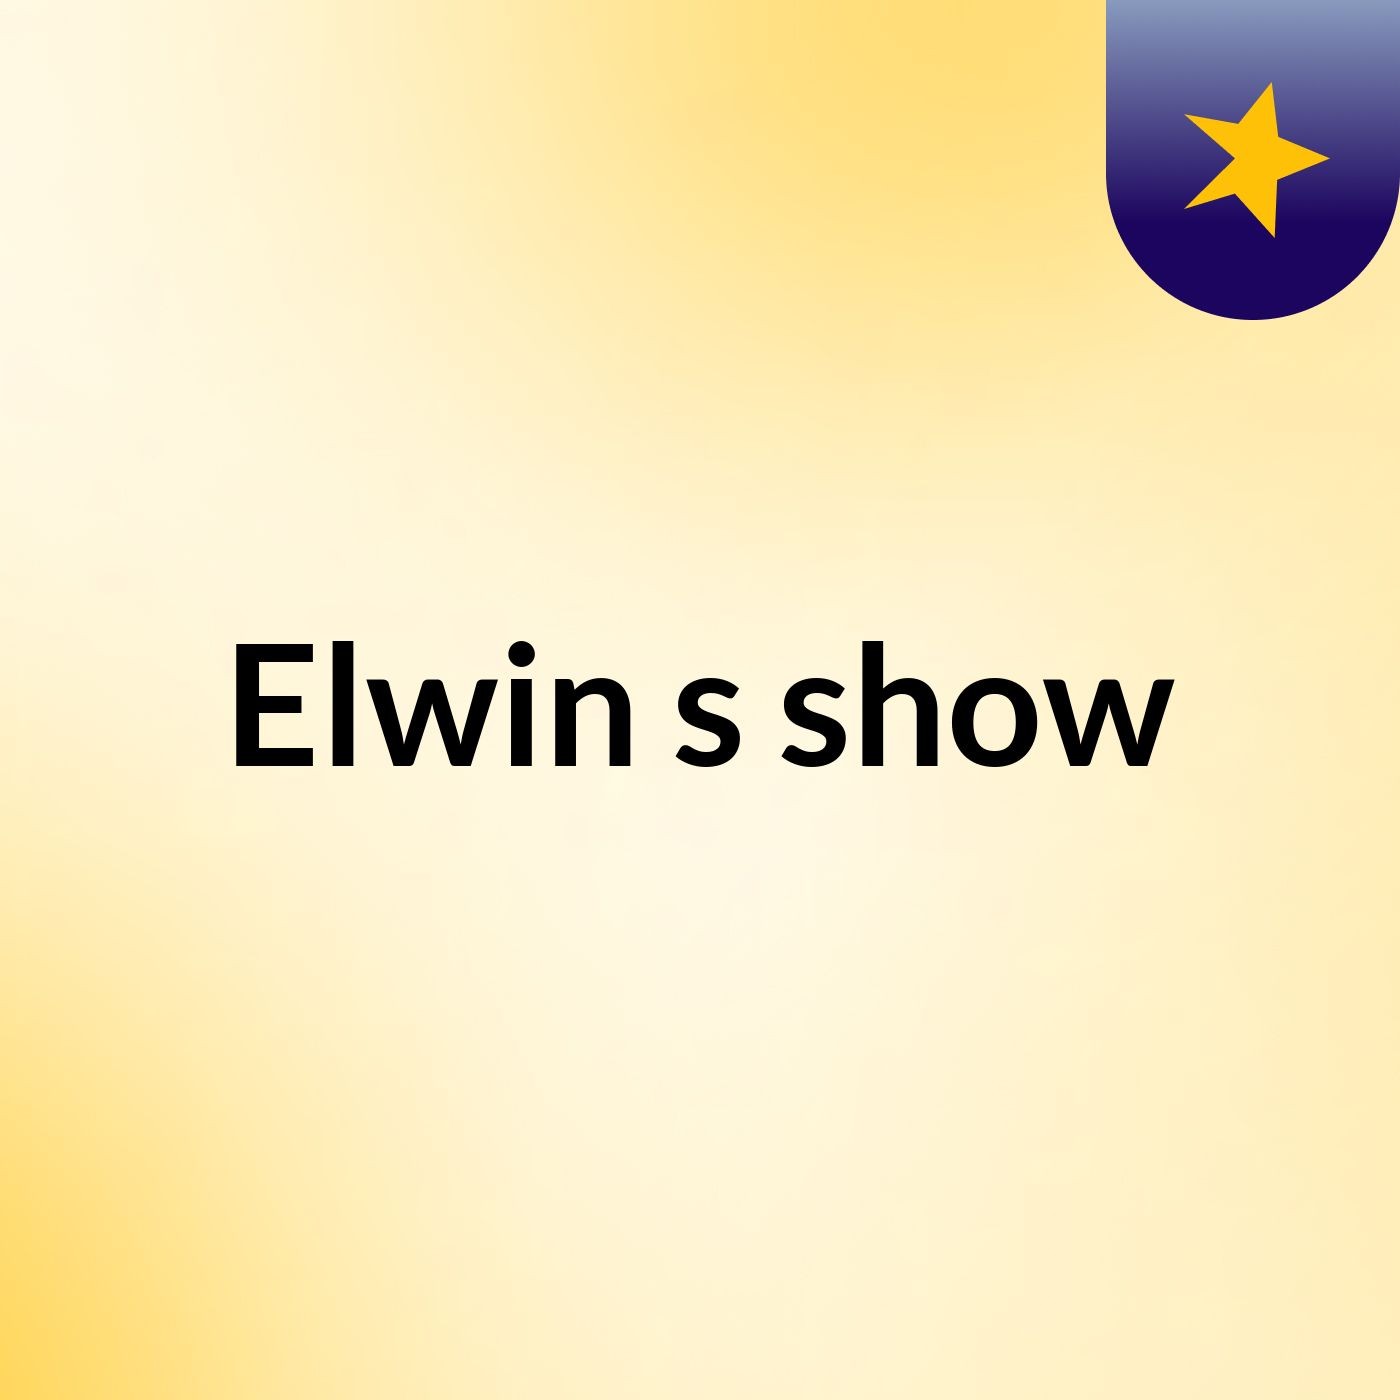 Elwin's show